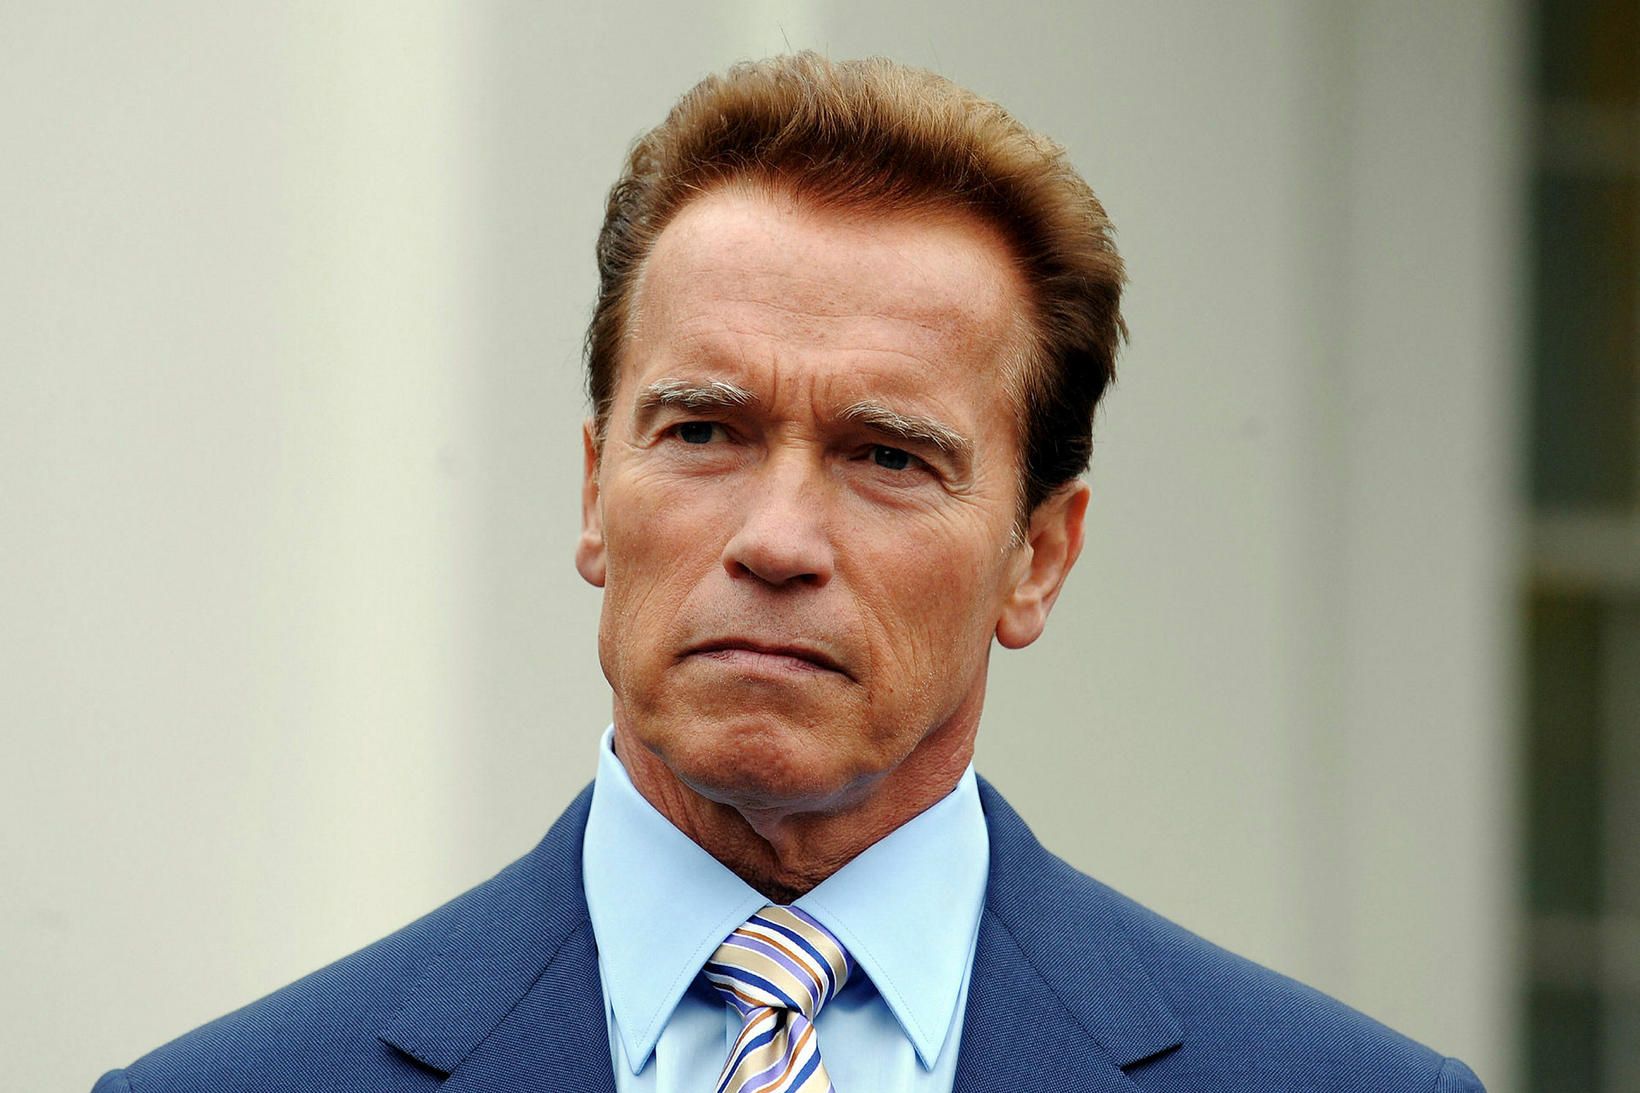 Arnold Schwarzenegger, leikari, kraftajötunn og fyrrverandi ríkisstjóri Kaliforníu.